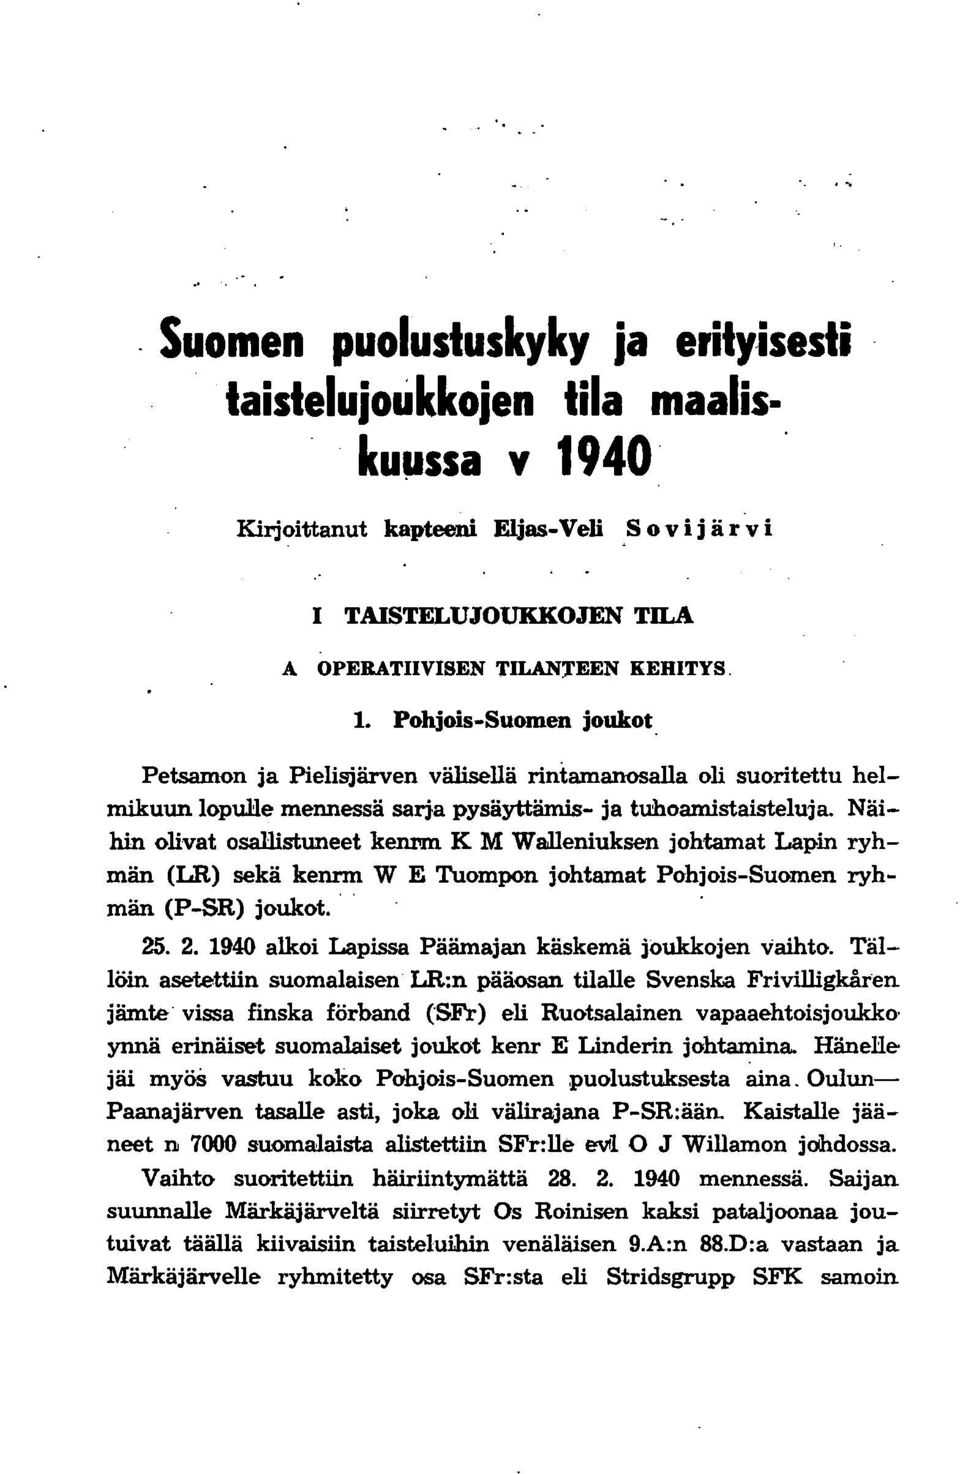 Näihin olivat osallistuneet kemm K M WaJleniuksen johtamat Lapin ryhmän (LR) sekä kennn W E Tuompon johtamat Pohjois-Suomen ryhmän (P-SR) joukot.. 25